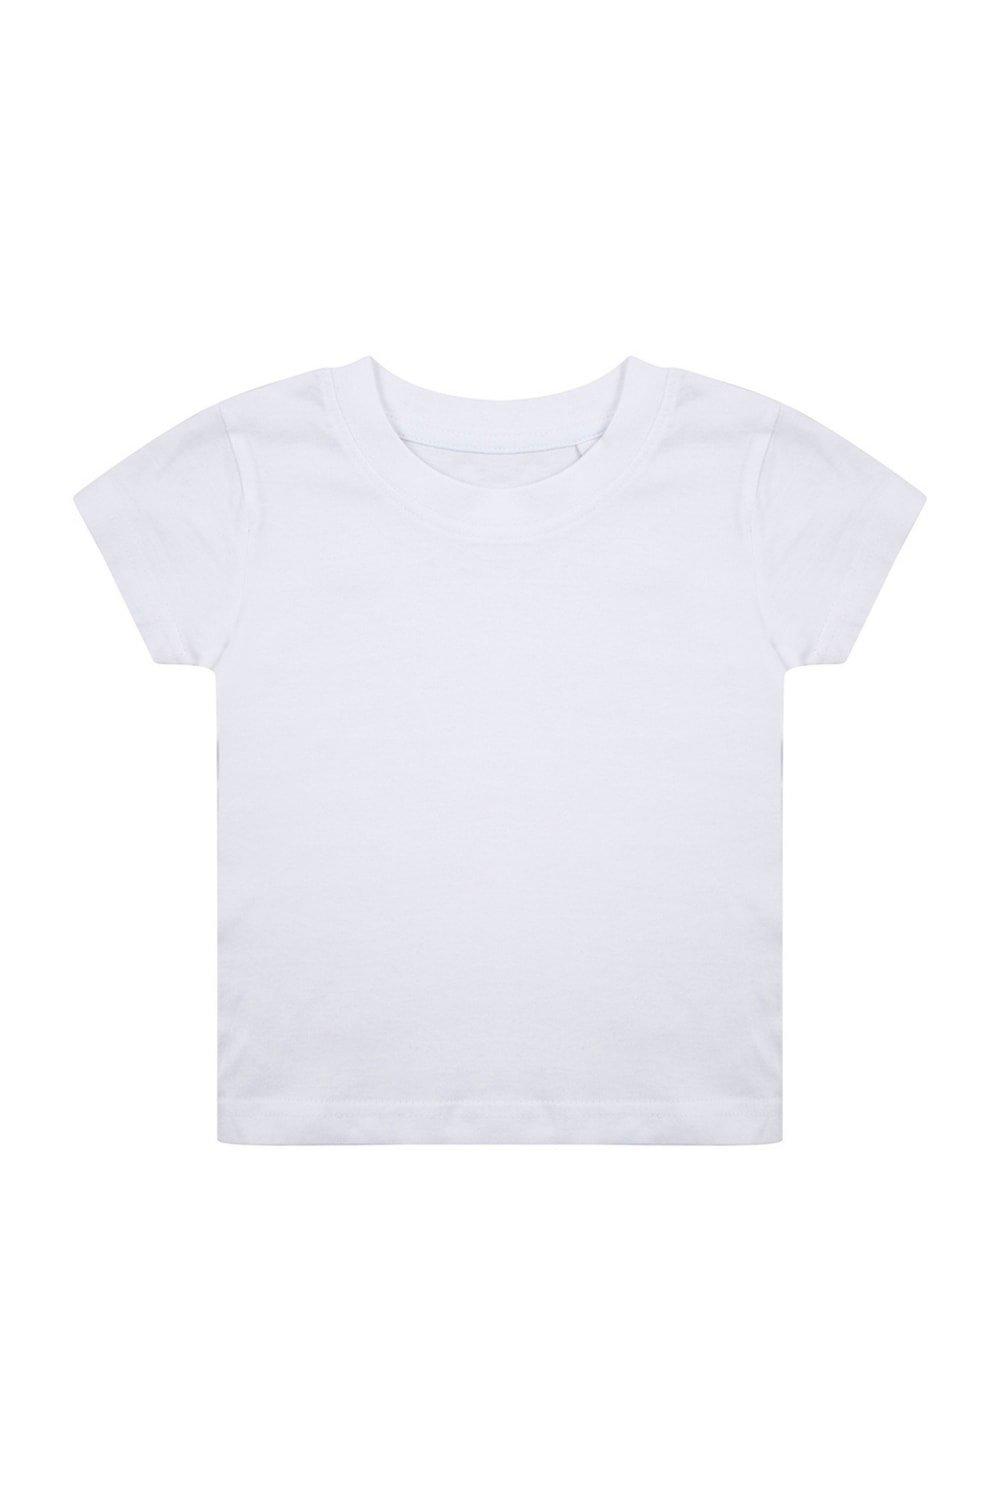 Органическая футболка Larkwood, белый костюм размер 6 мес